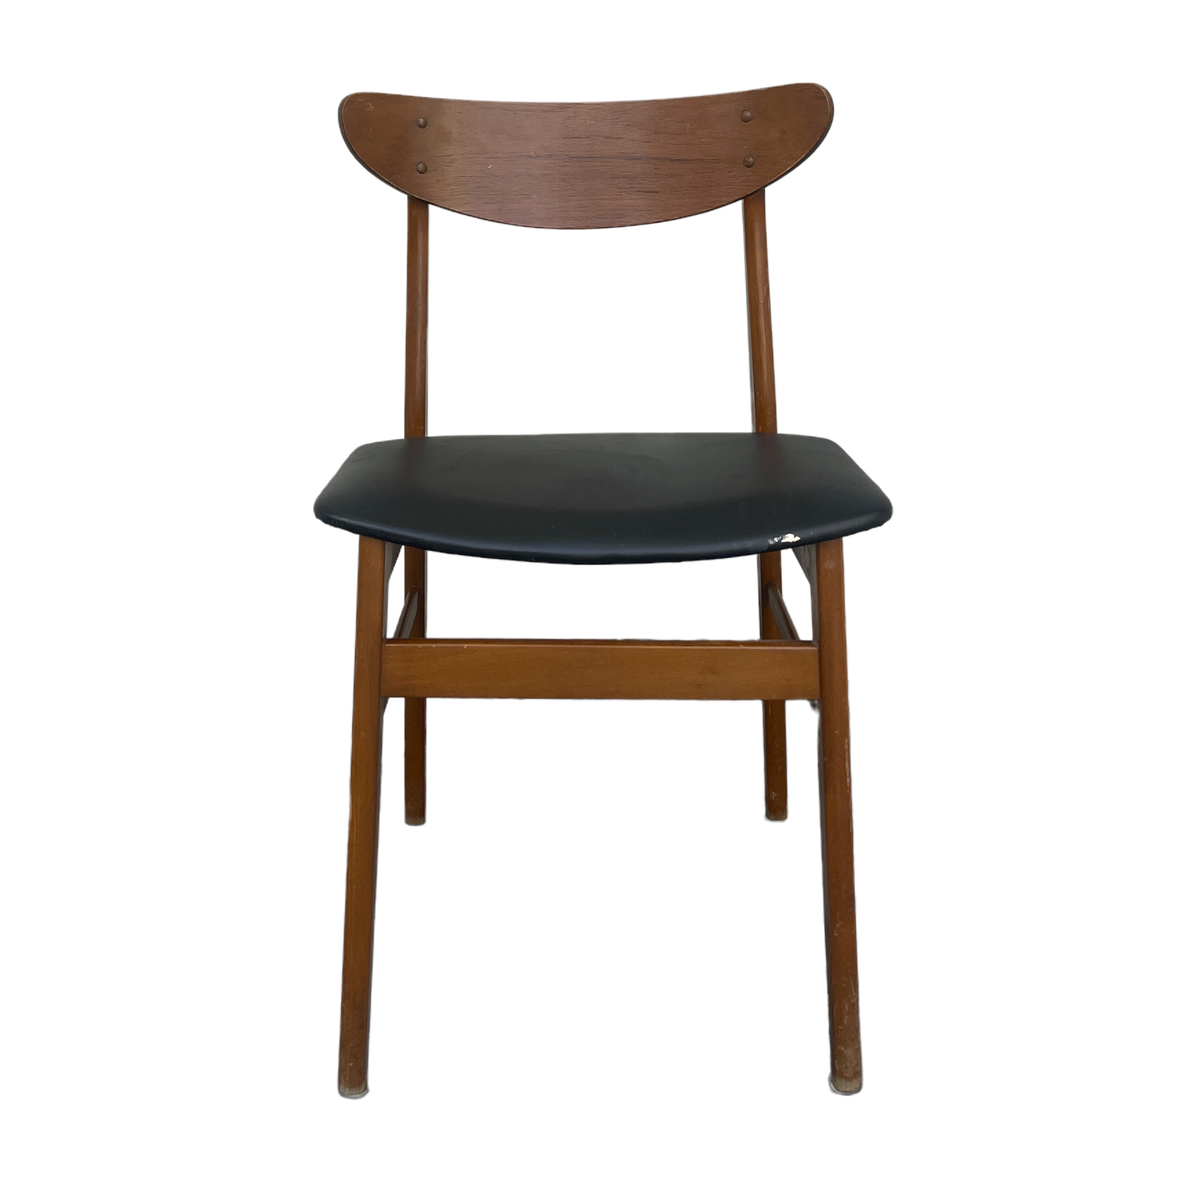 Mid Century Danish Chair